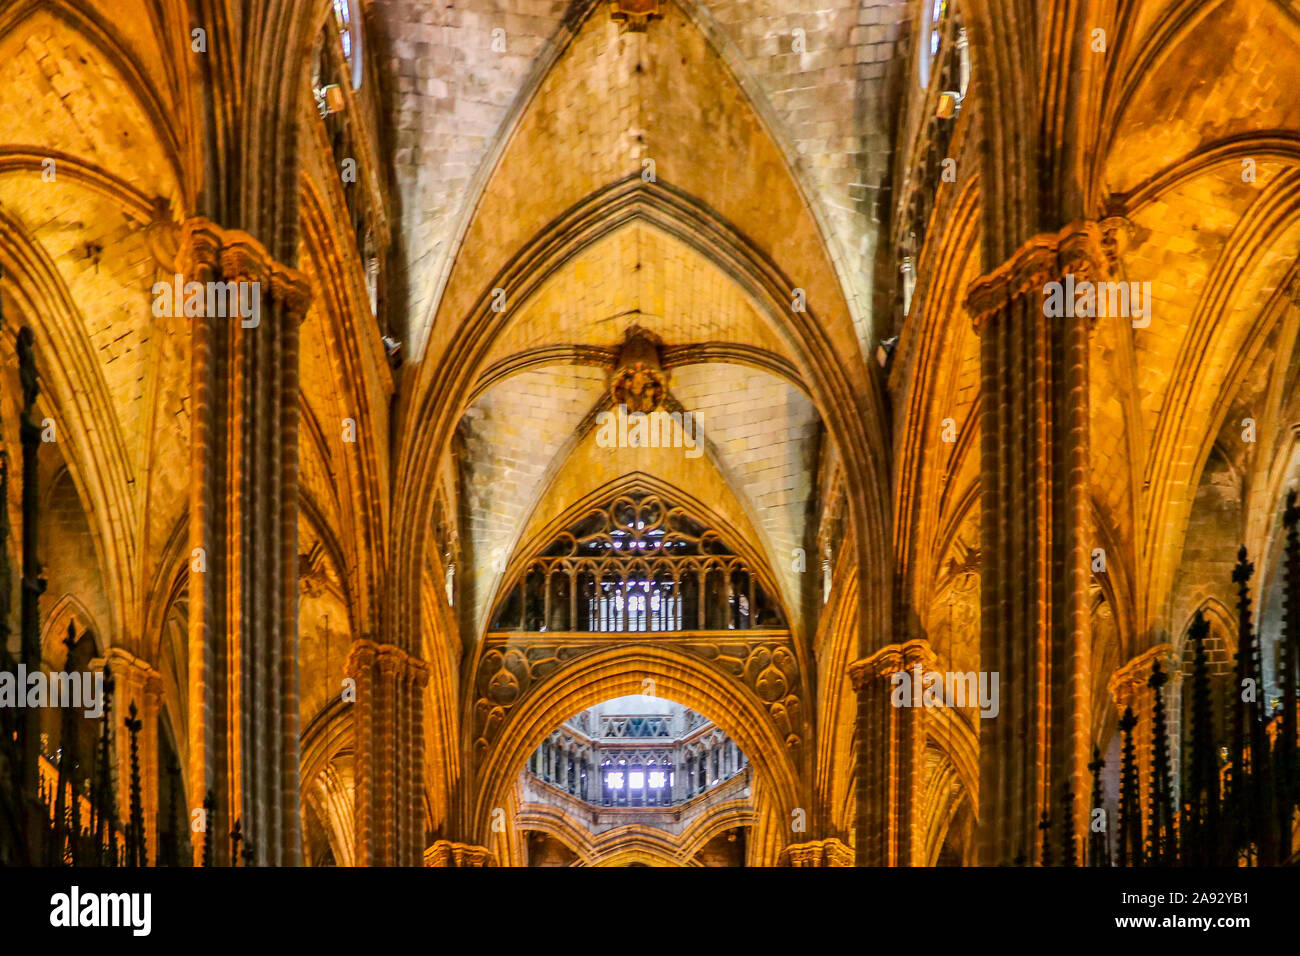 Die Kathedrale von Barcelona, reich an typischen gotischen Stil mit eleganten Fenstern und detaillierte Entwürfe überall Stockfoto